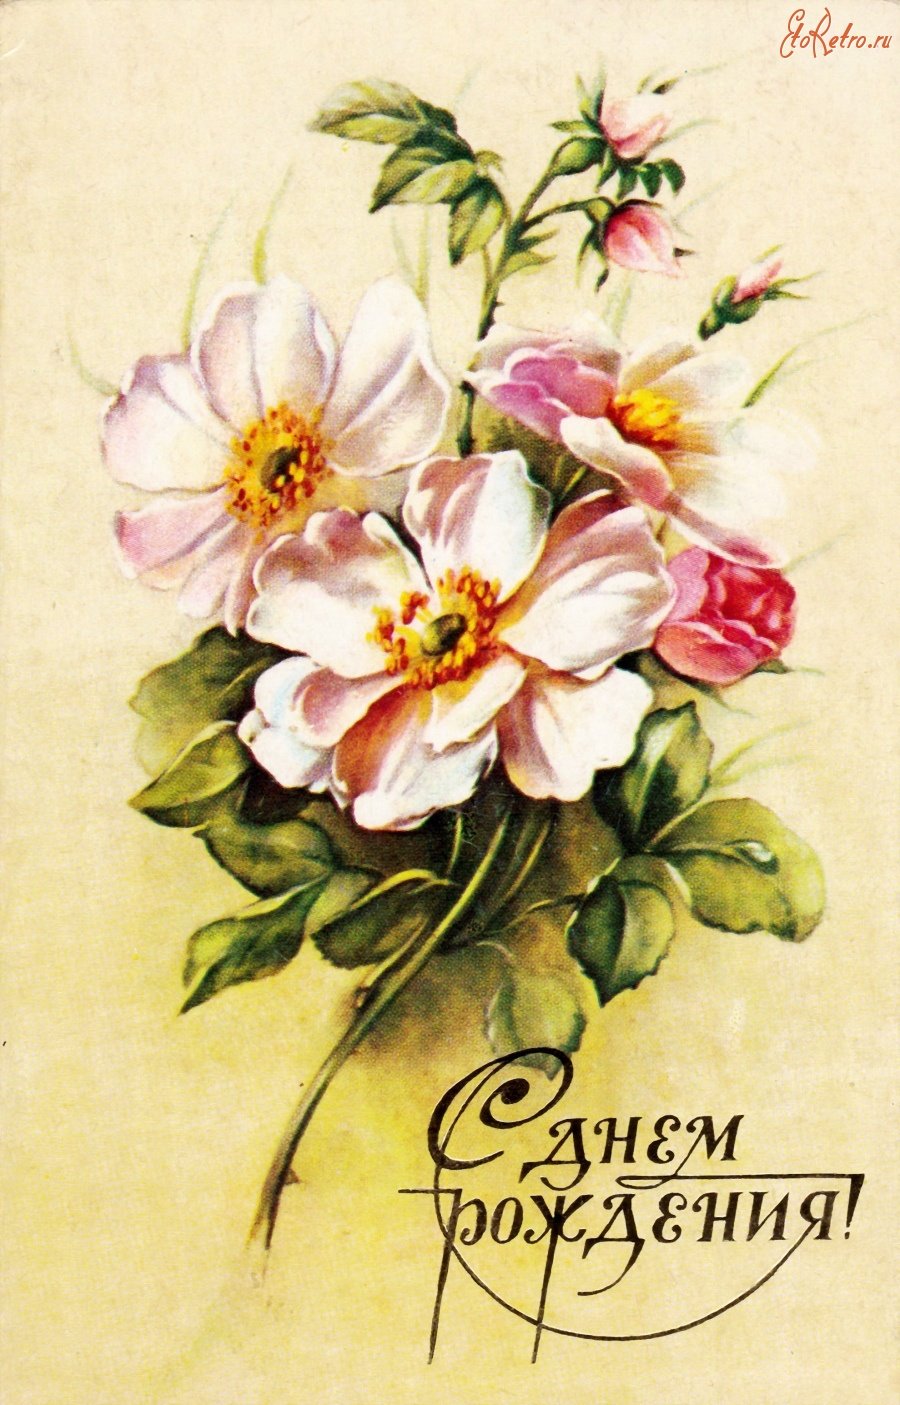 Открытка Поздравляем бабушку, Поздравление бабушке от детей 1991 год, открытка № 2598